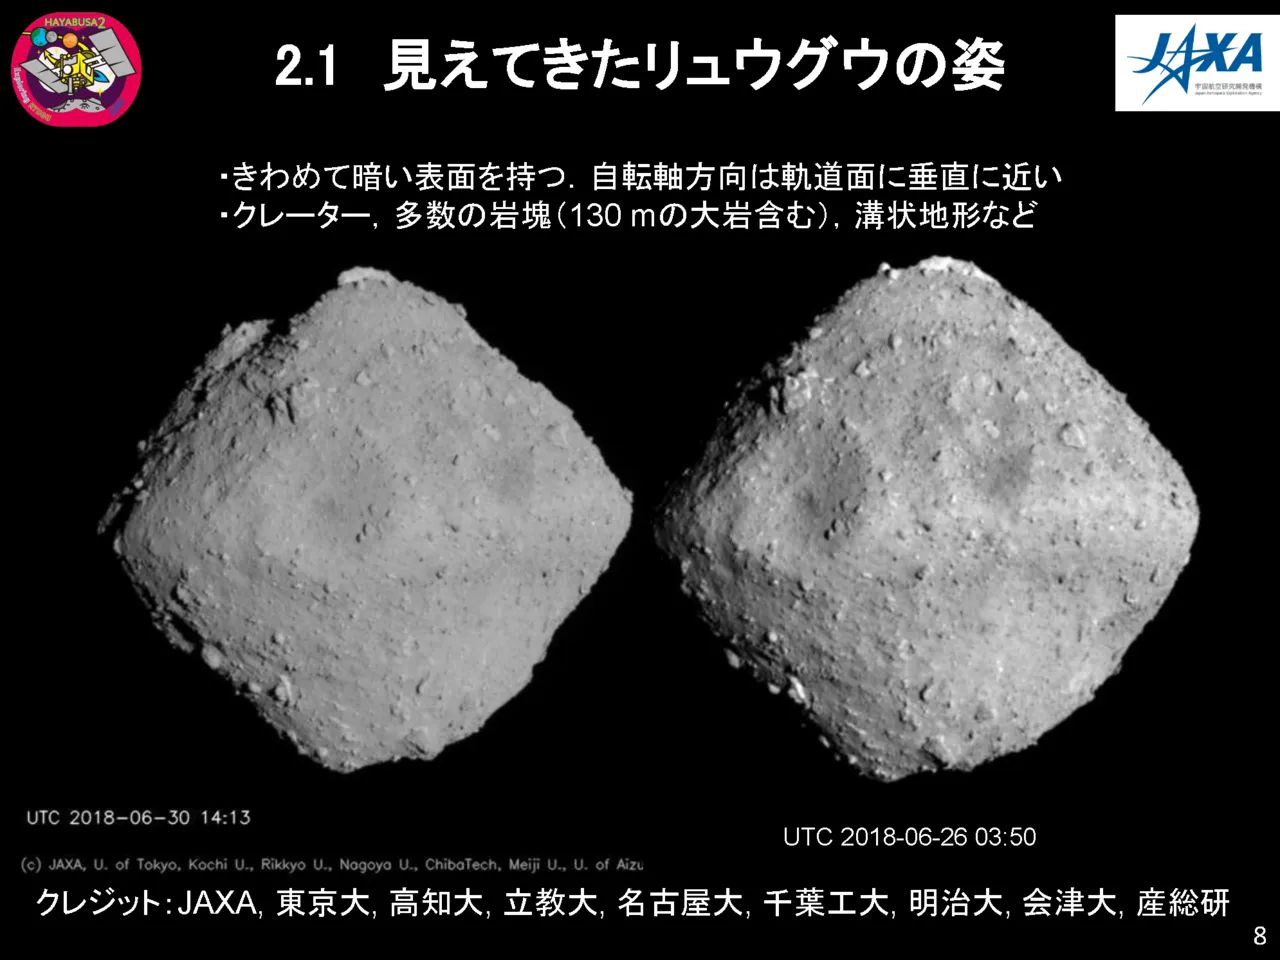 隼鸟2号拍摄到的小行星龙宫的照片，JAXA